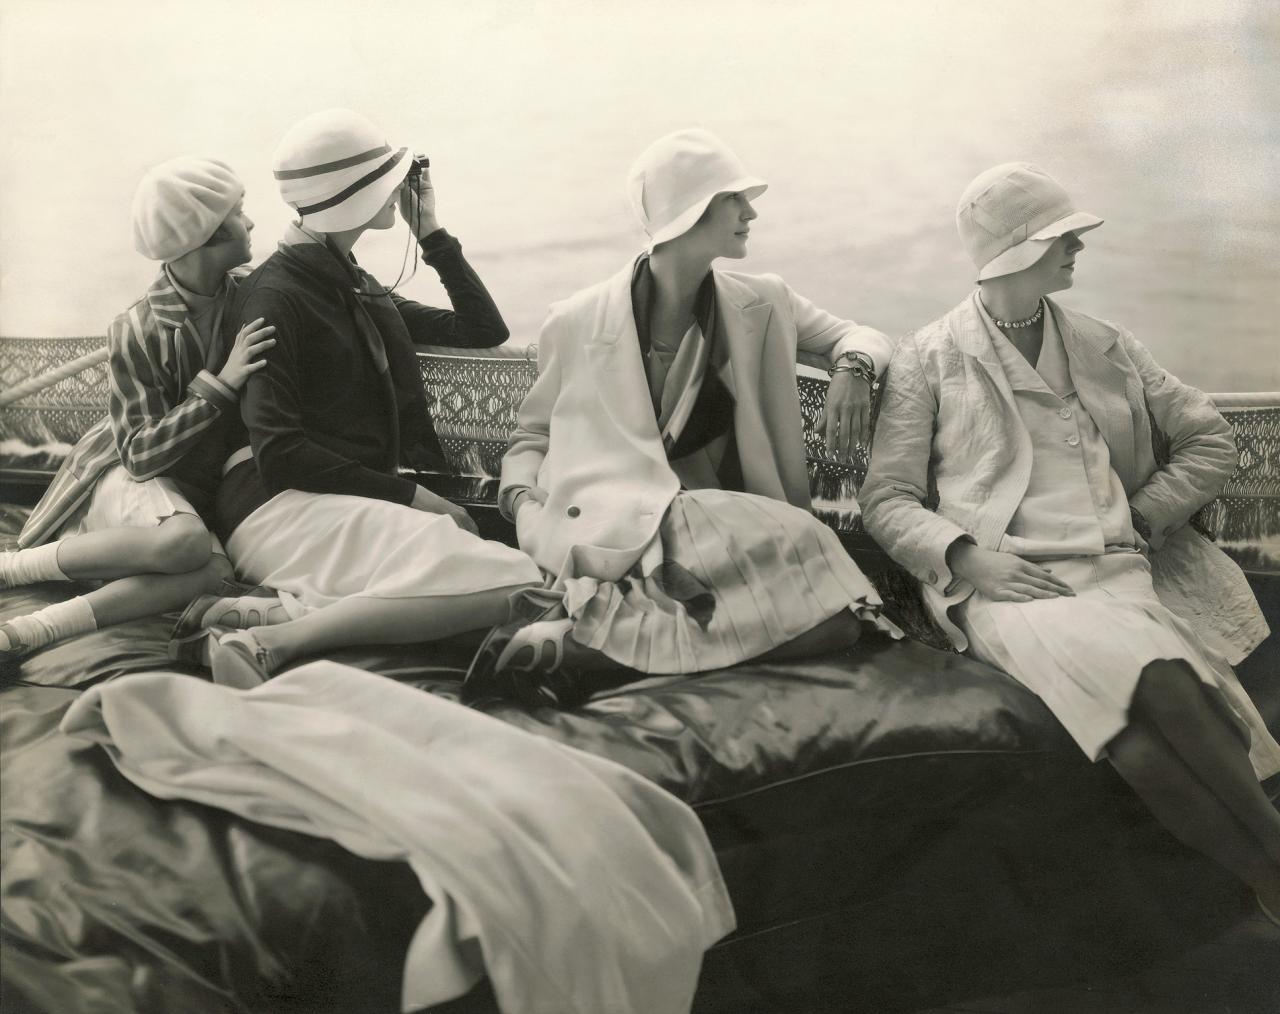 Women’s leisure wear in the 30s, photograph by Edward Steichen